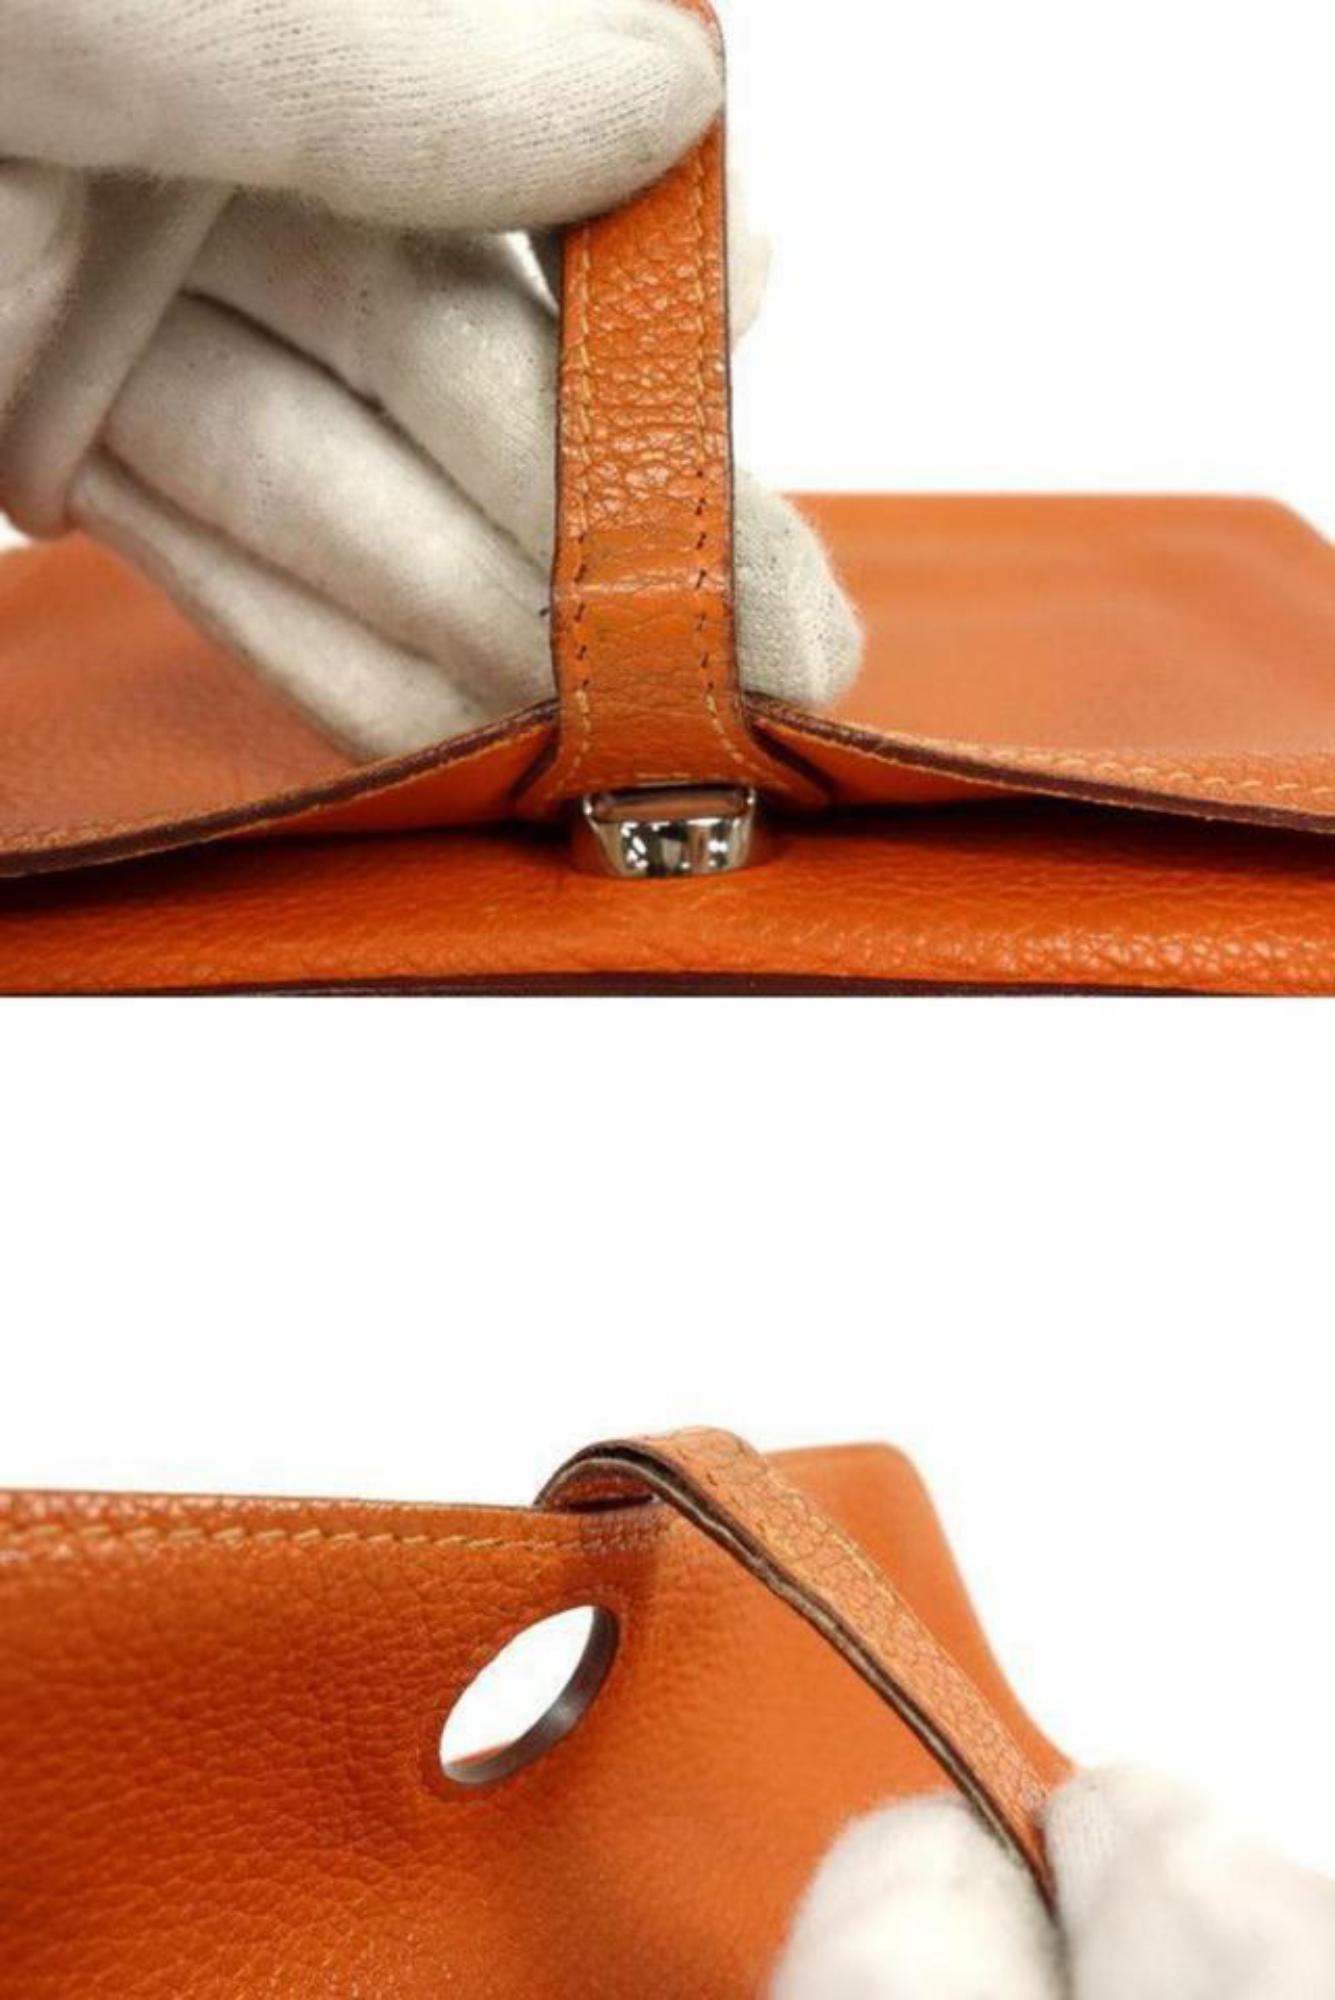 Hermès Portefeuille Dogon en cuir Togo orange 232H857
Date Code/Numéro de série :  F dans un carré 
Fabriqué en : France 
Mesures : Longueur : 7.75